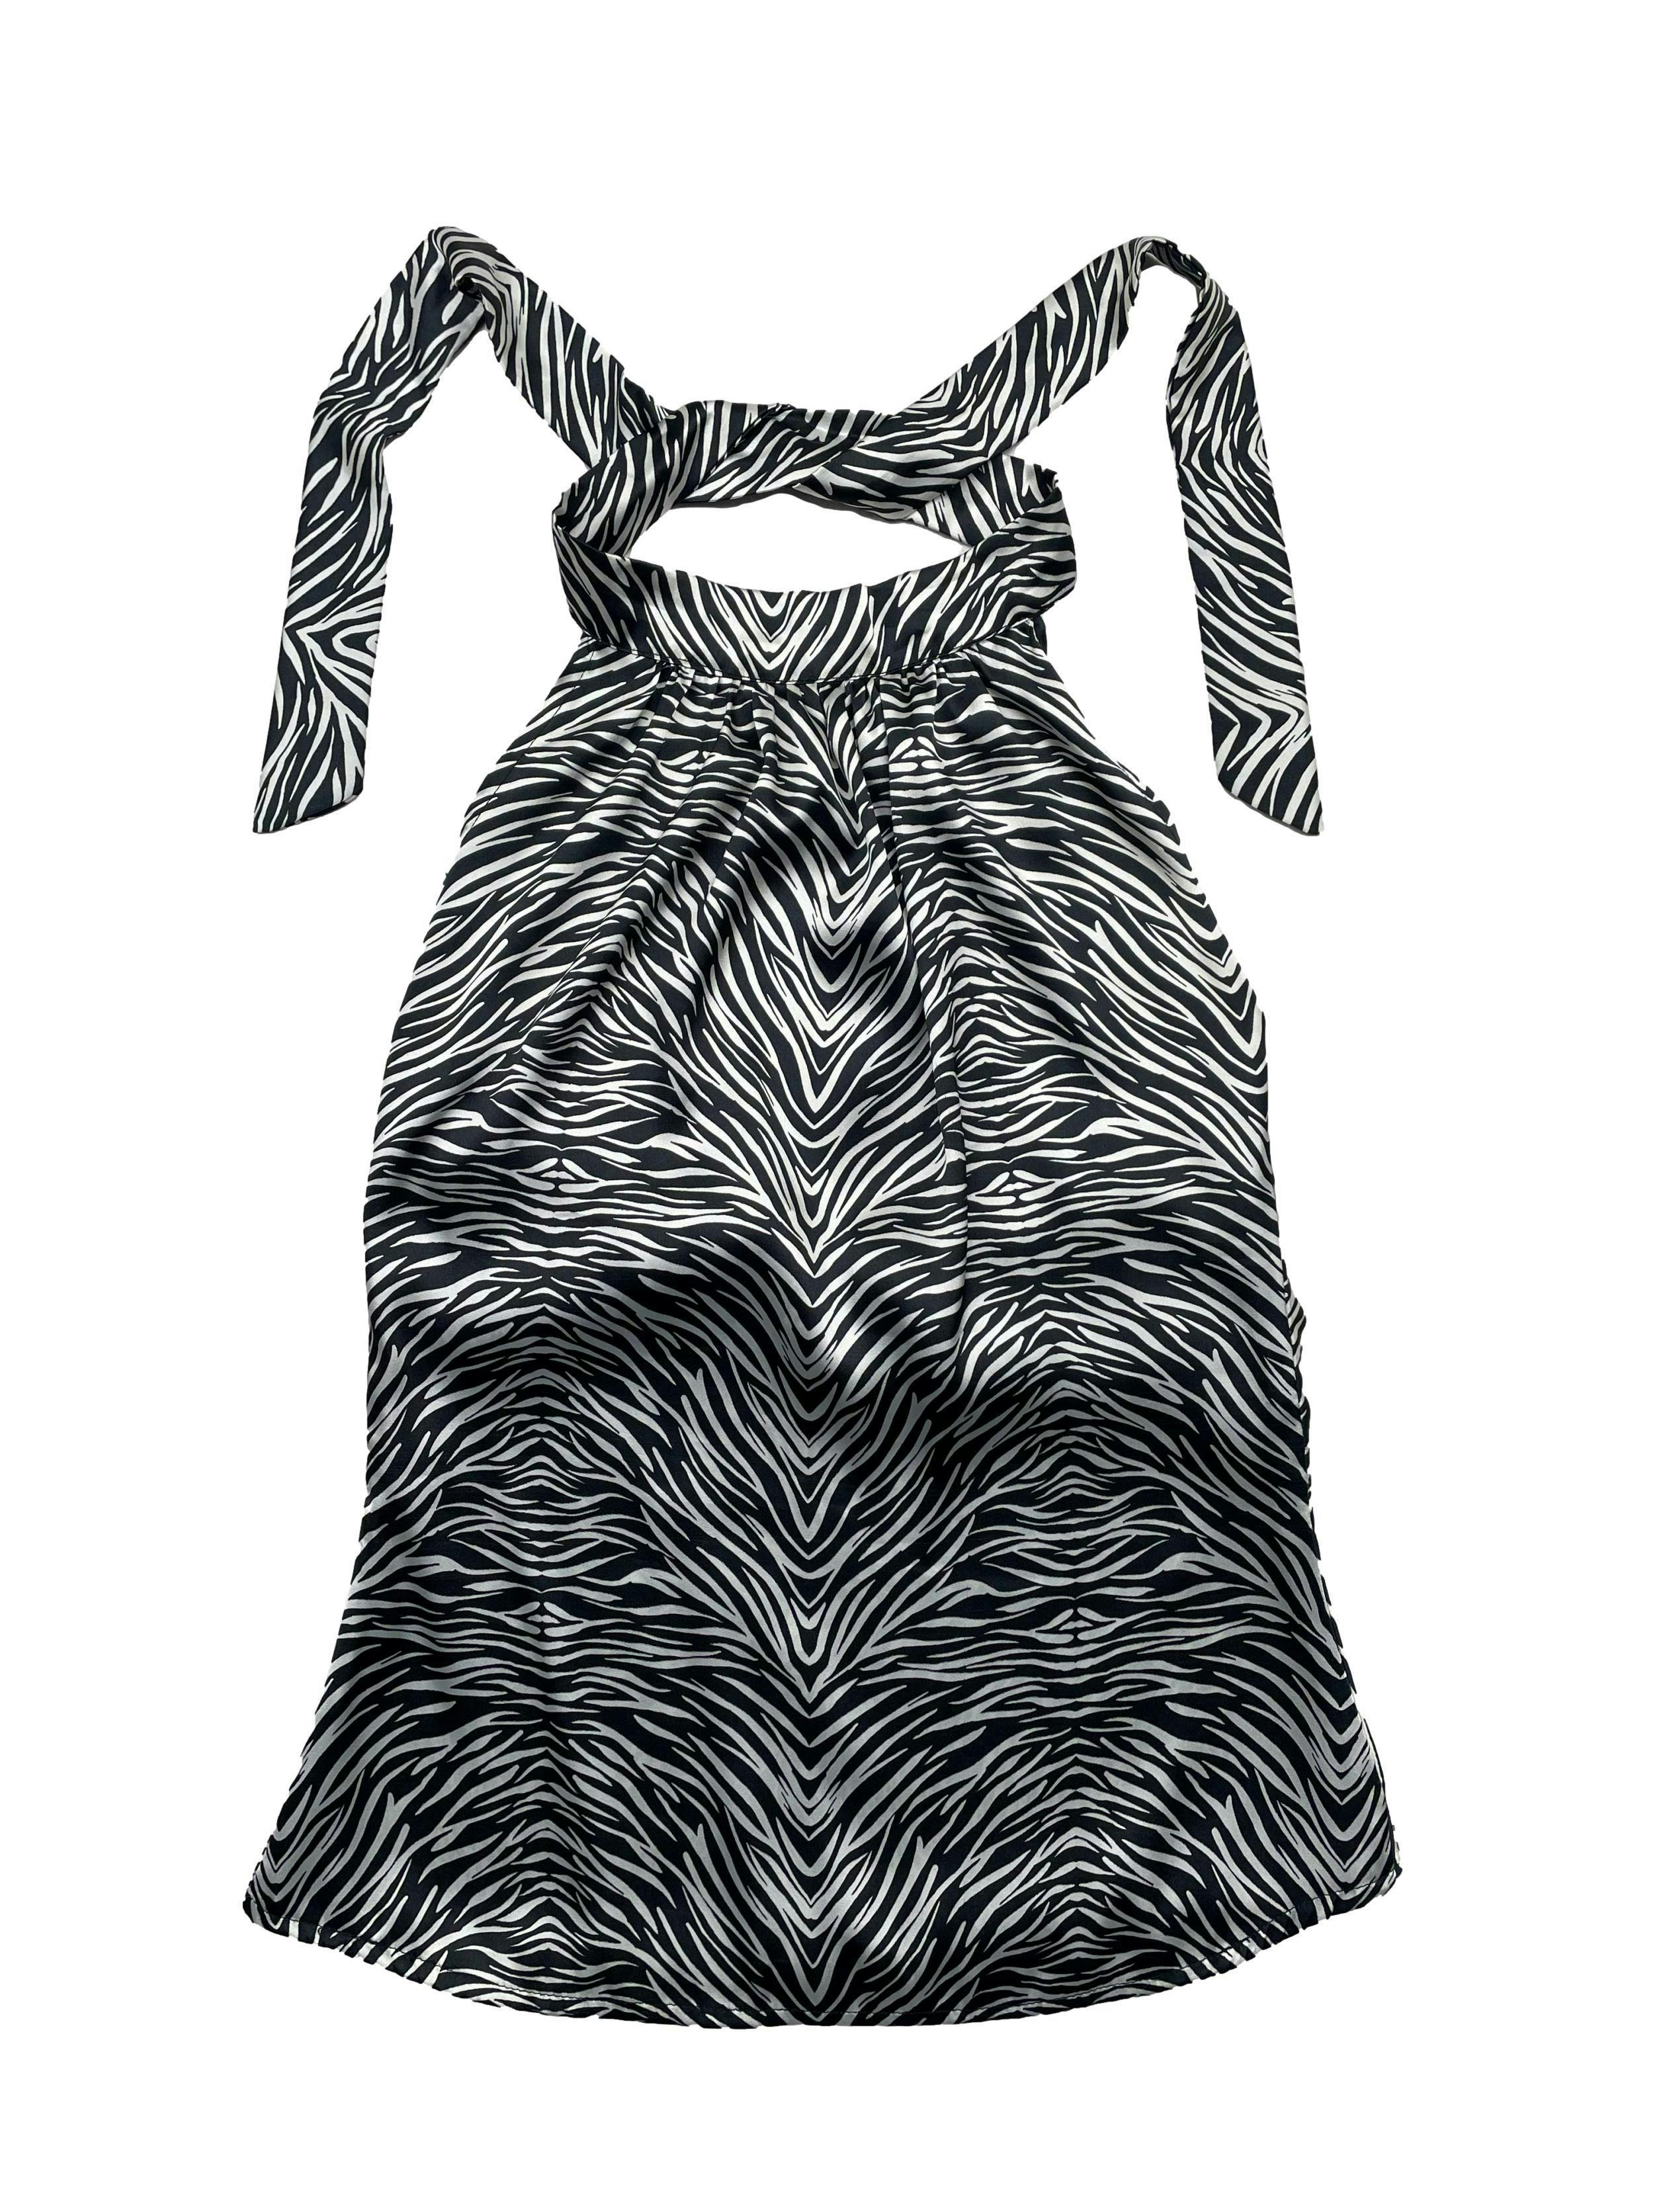 Blusa animal print de tela plana satinada en blanco y negro, cuello halter con fruncido y cintos, espalda escotada. Busto 80cm, Largo 54cm.